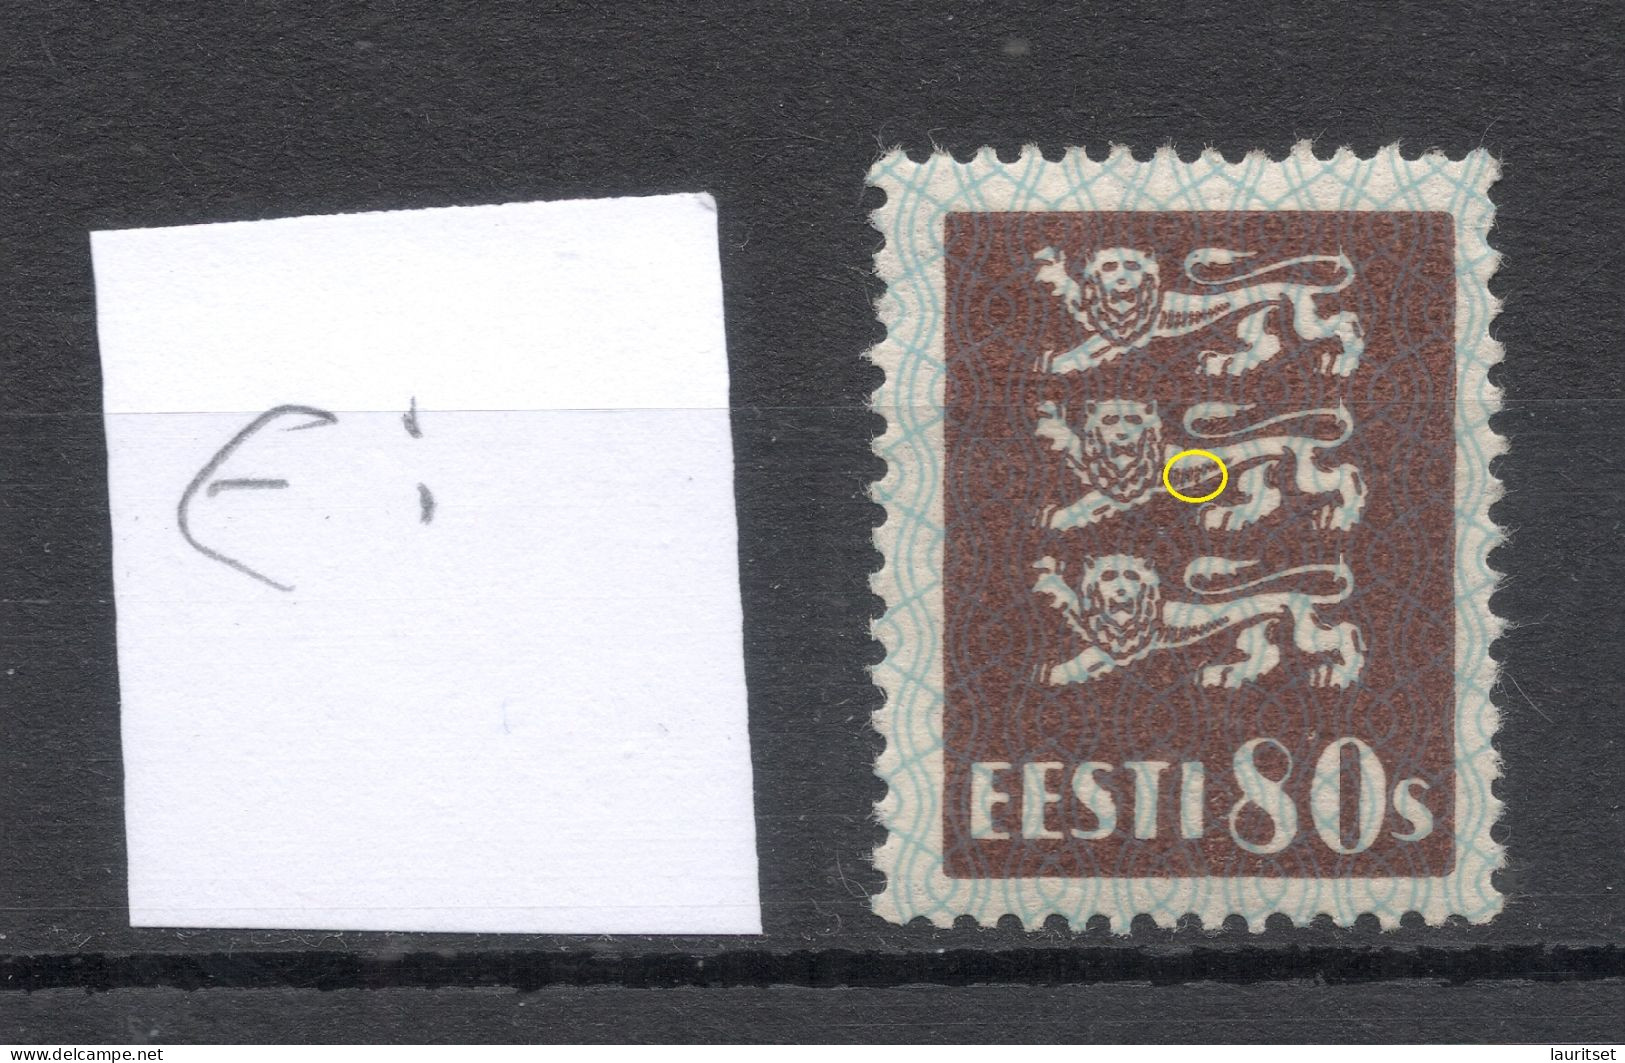 ESTLAND Estonia 1929 Michel 86 * ERROR Variety - Estonia